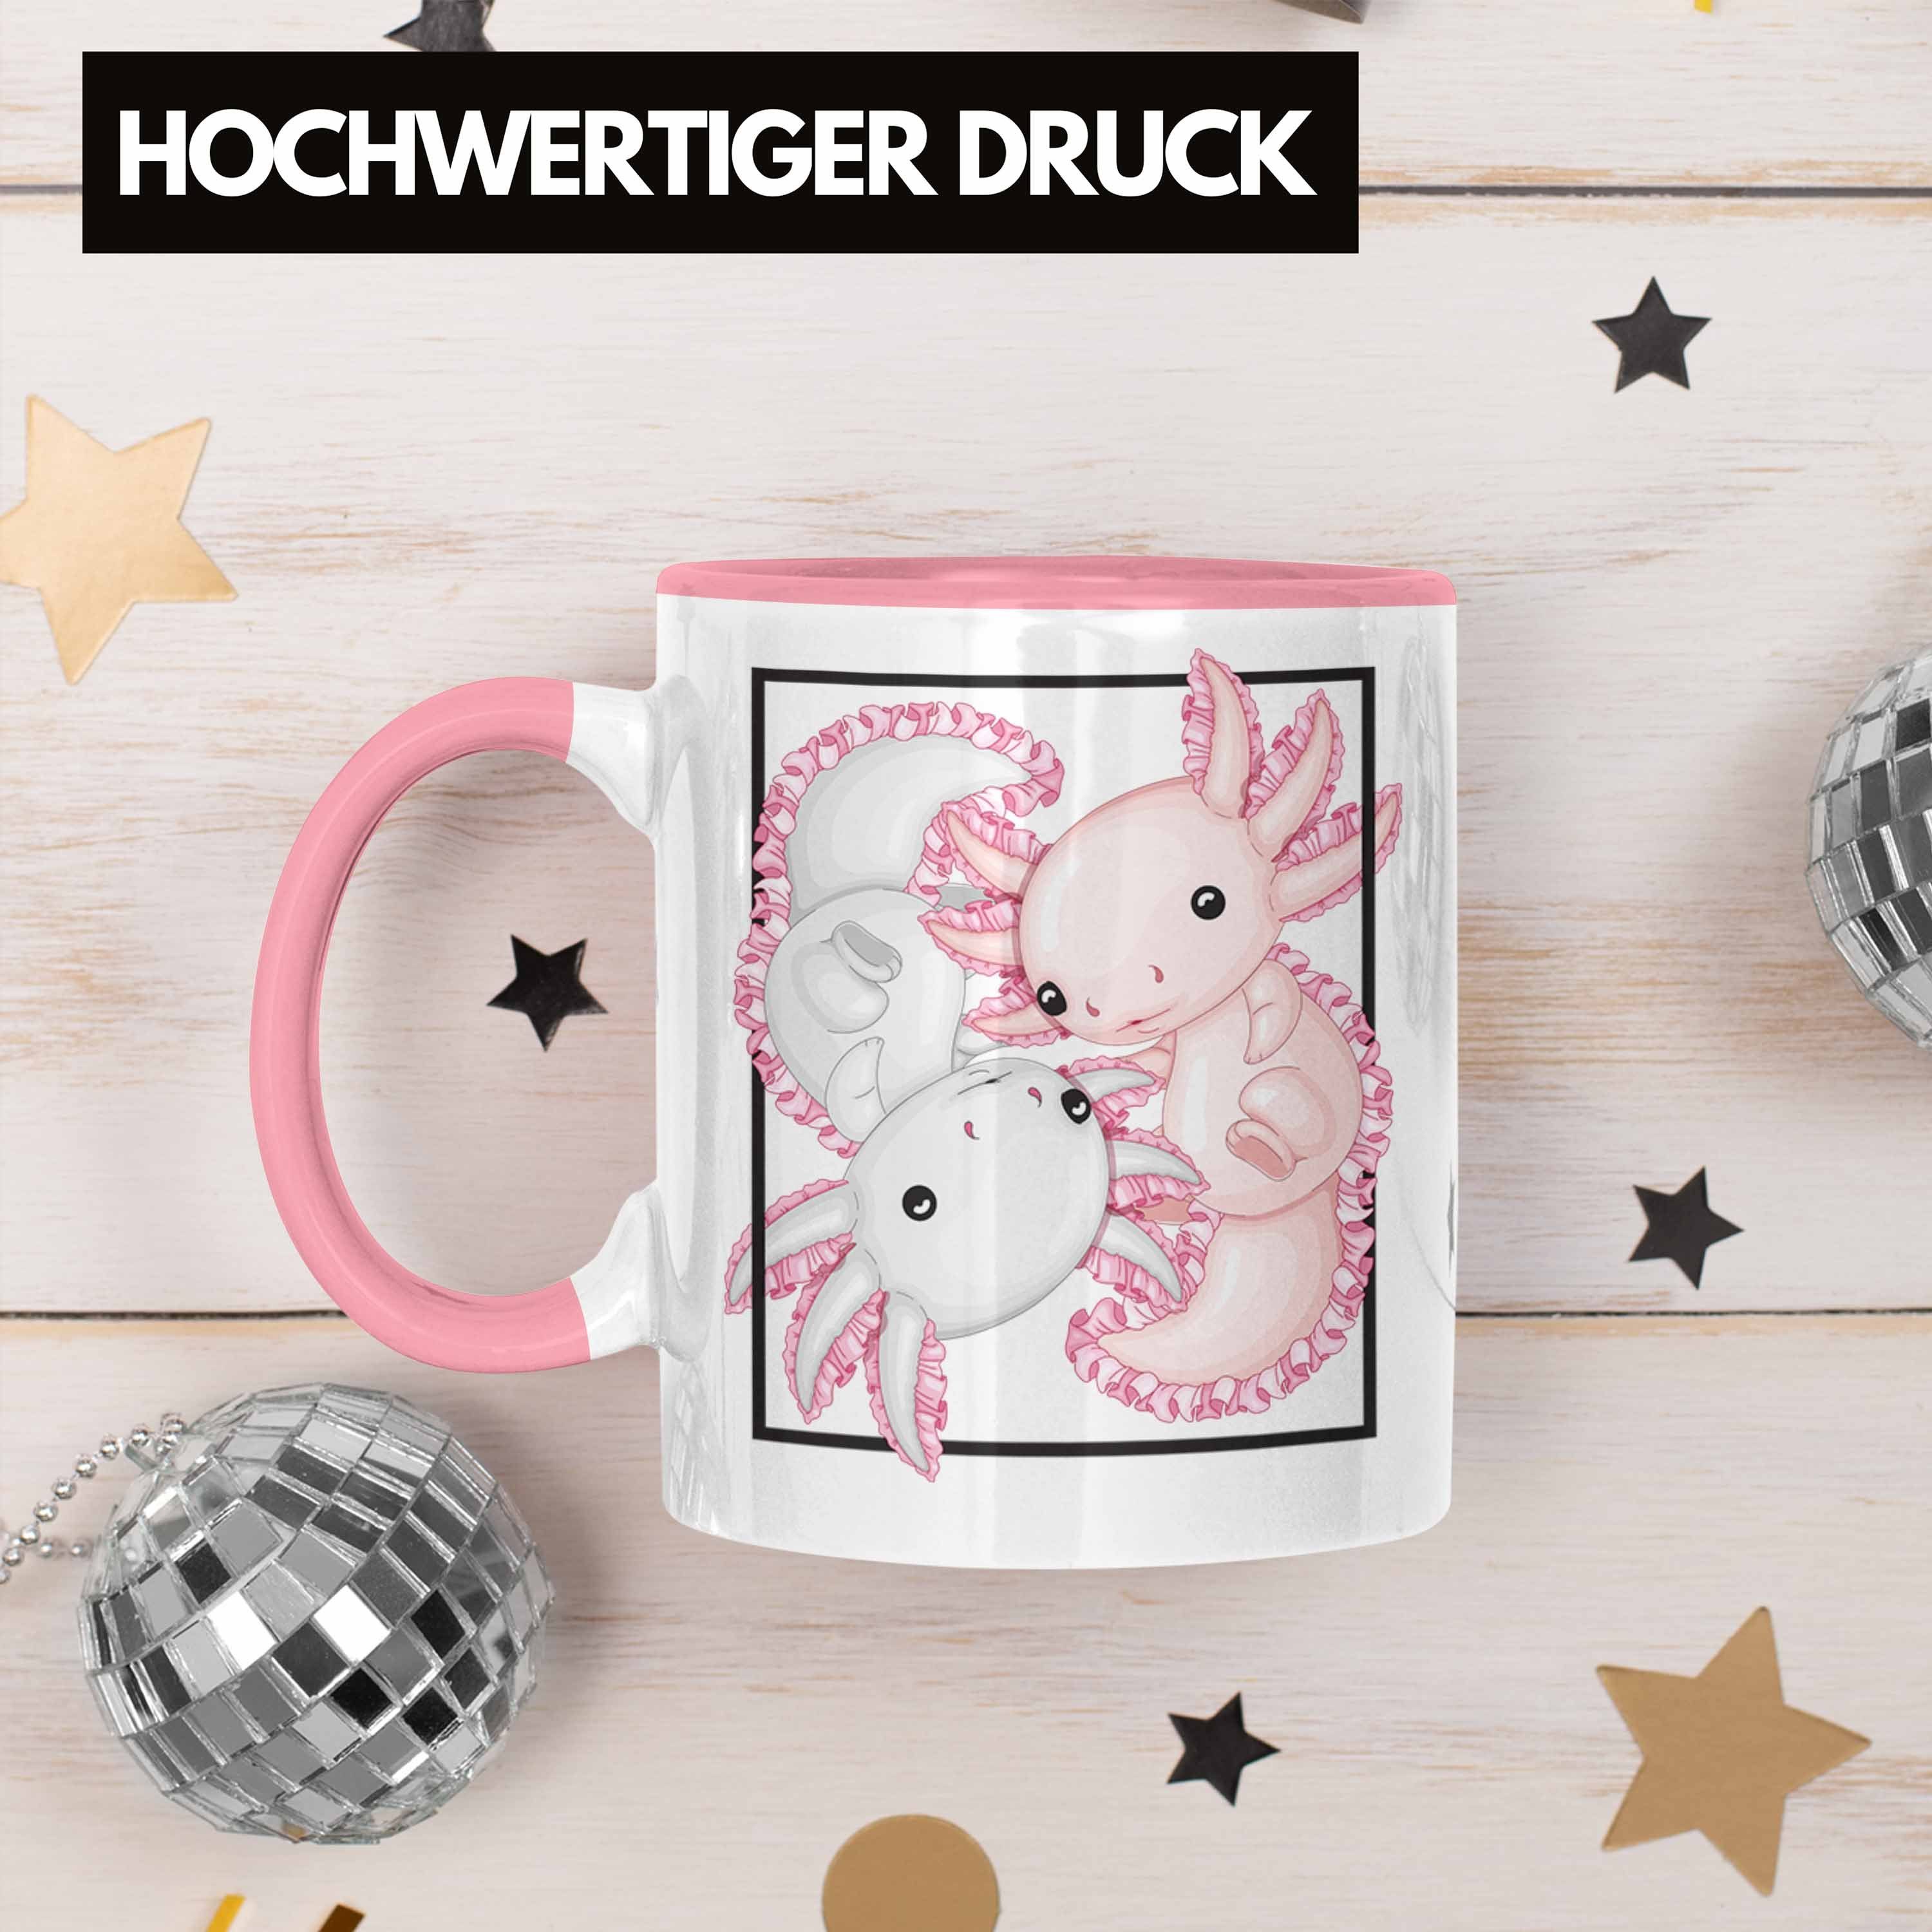 Rosa Tasse Trendation Besitzer Geschenk Axolotl Schwanzlurch Geschenkidee Tasse